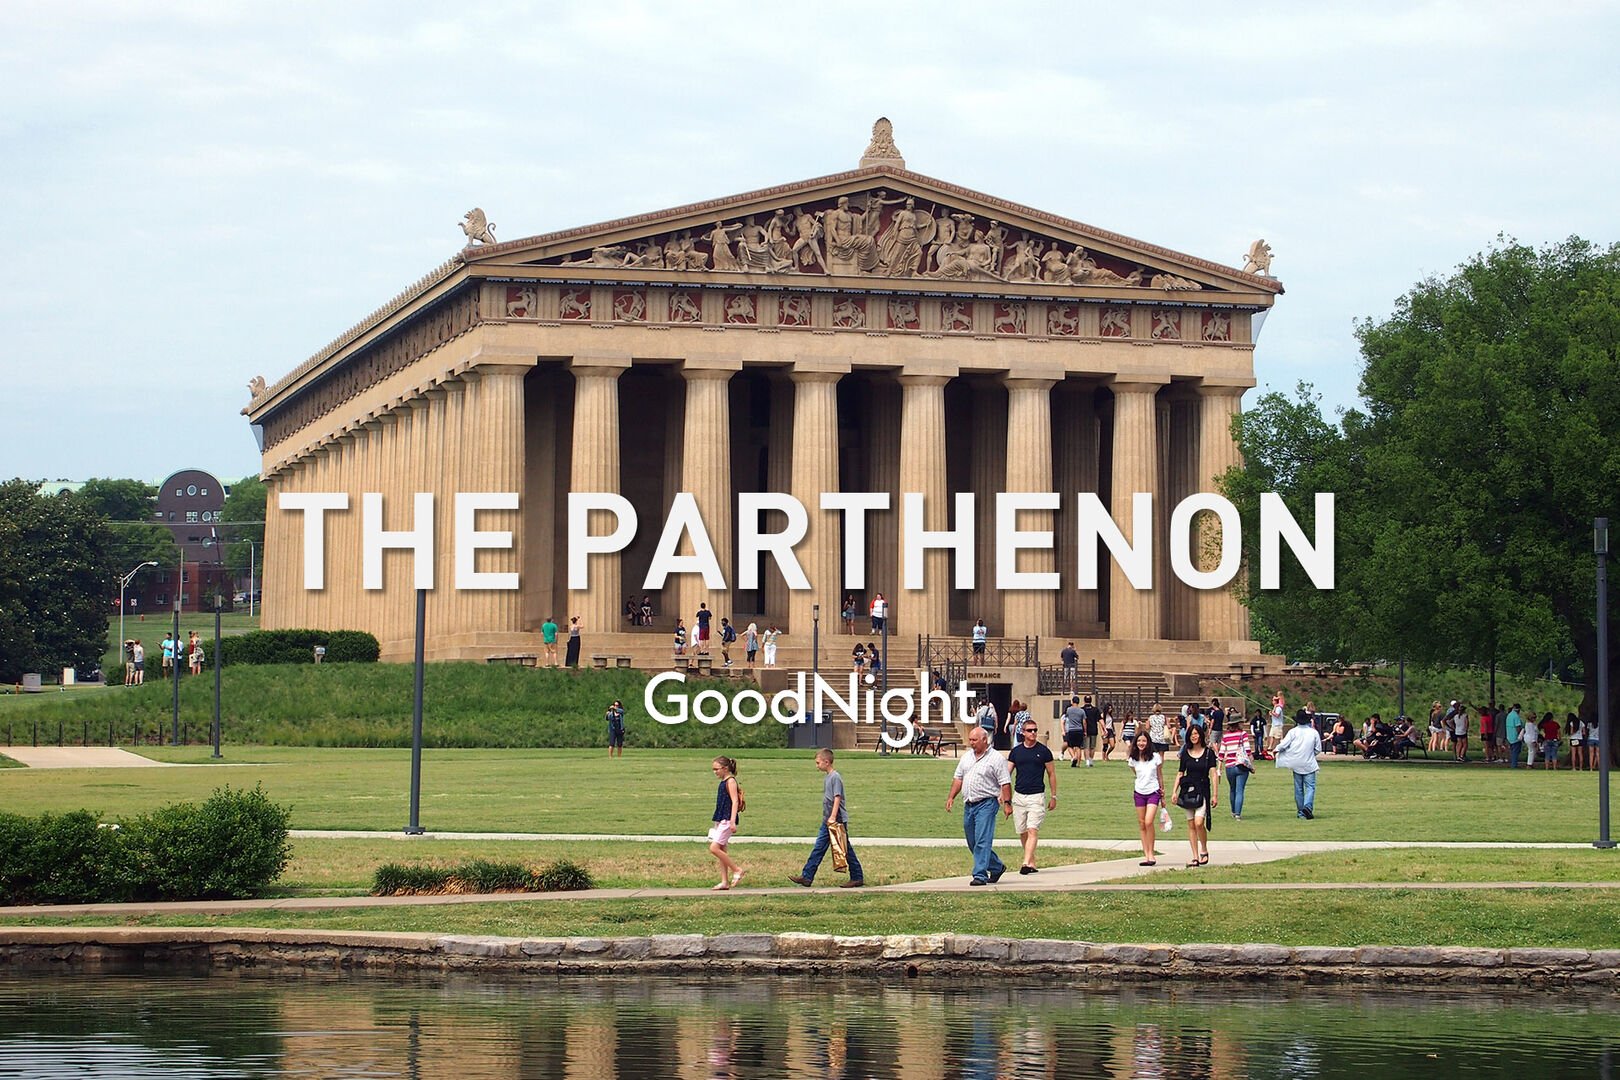 7 mins: The Parthenon